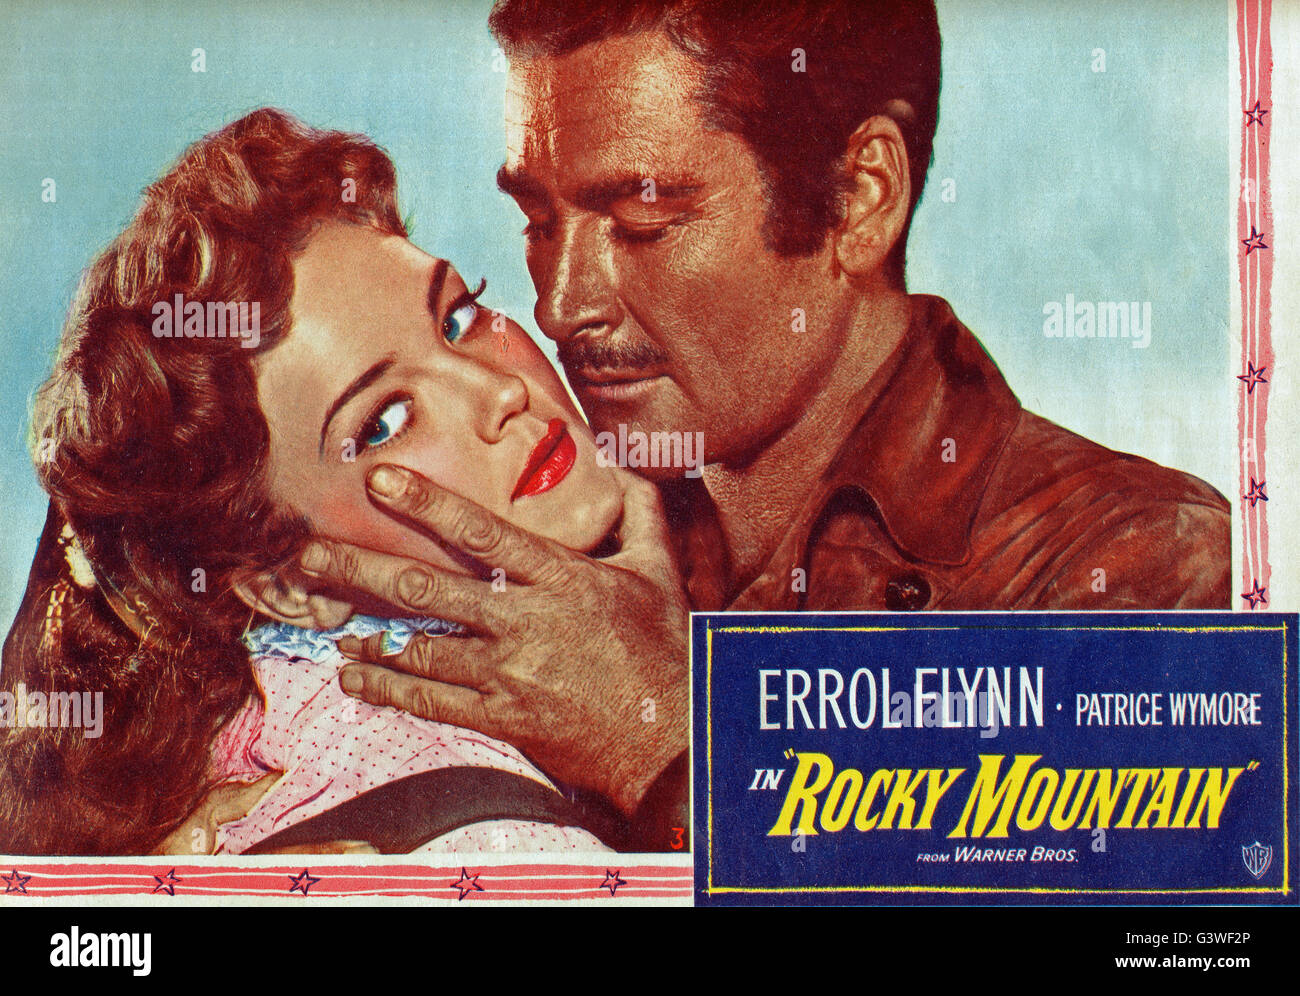 Rocky Mountain, aka: Herr der rauhen Berge, USA 1950, Regie: William Keighley, Darsteller: Patrice Wymore, Errol Flynn Stock Photo